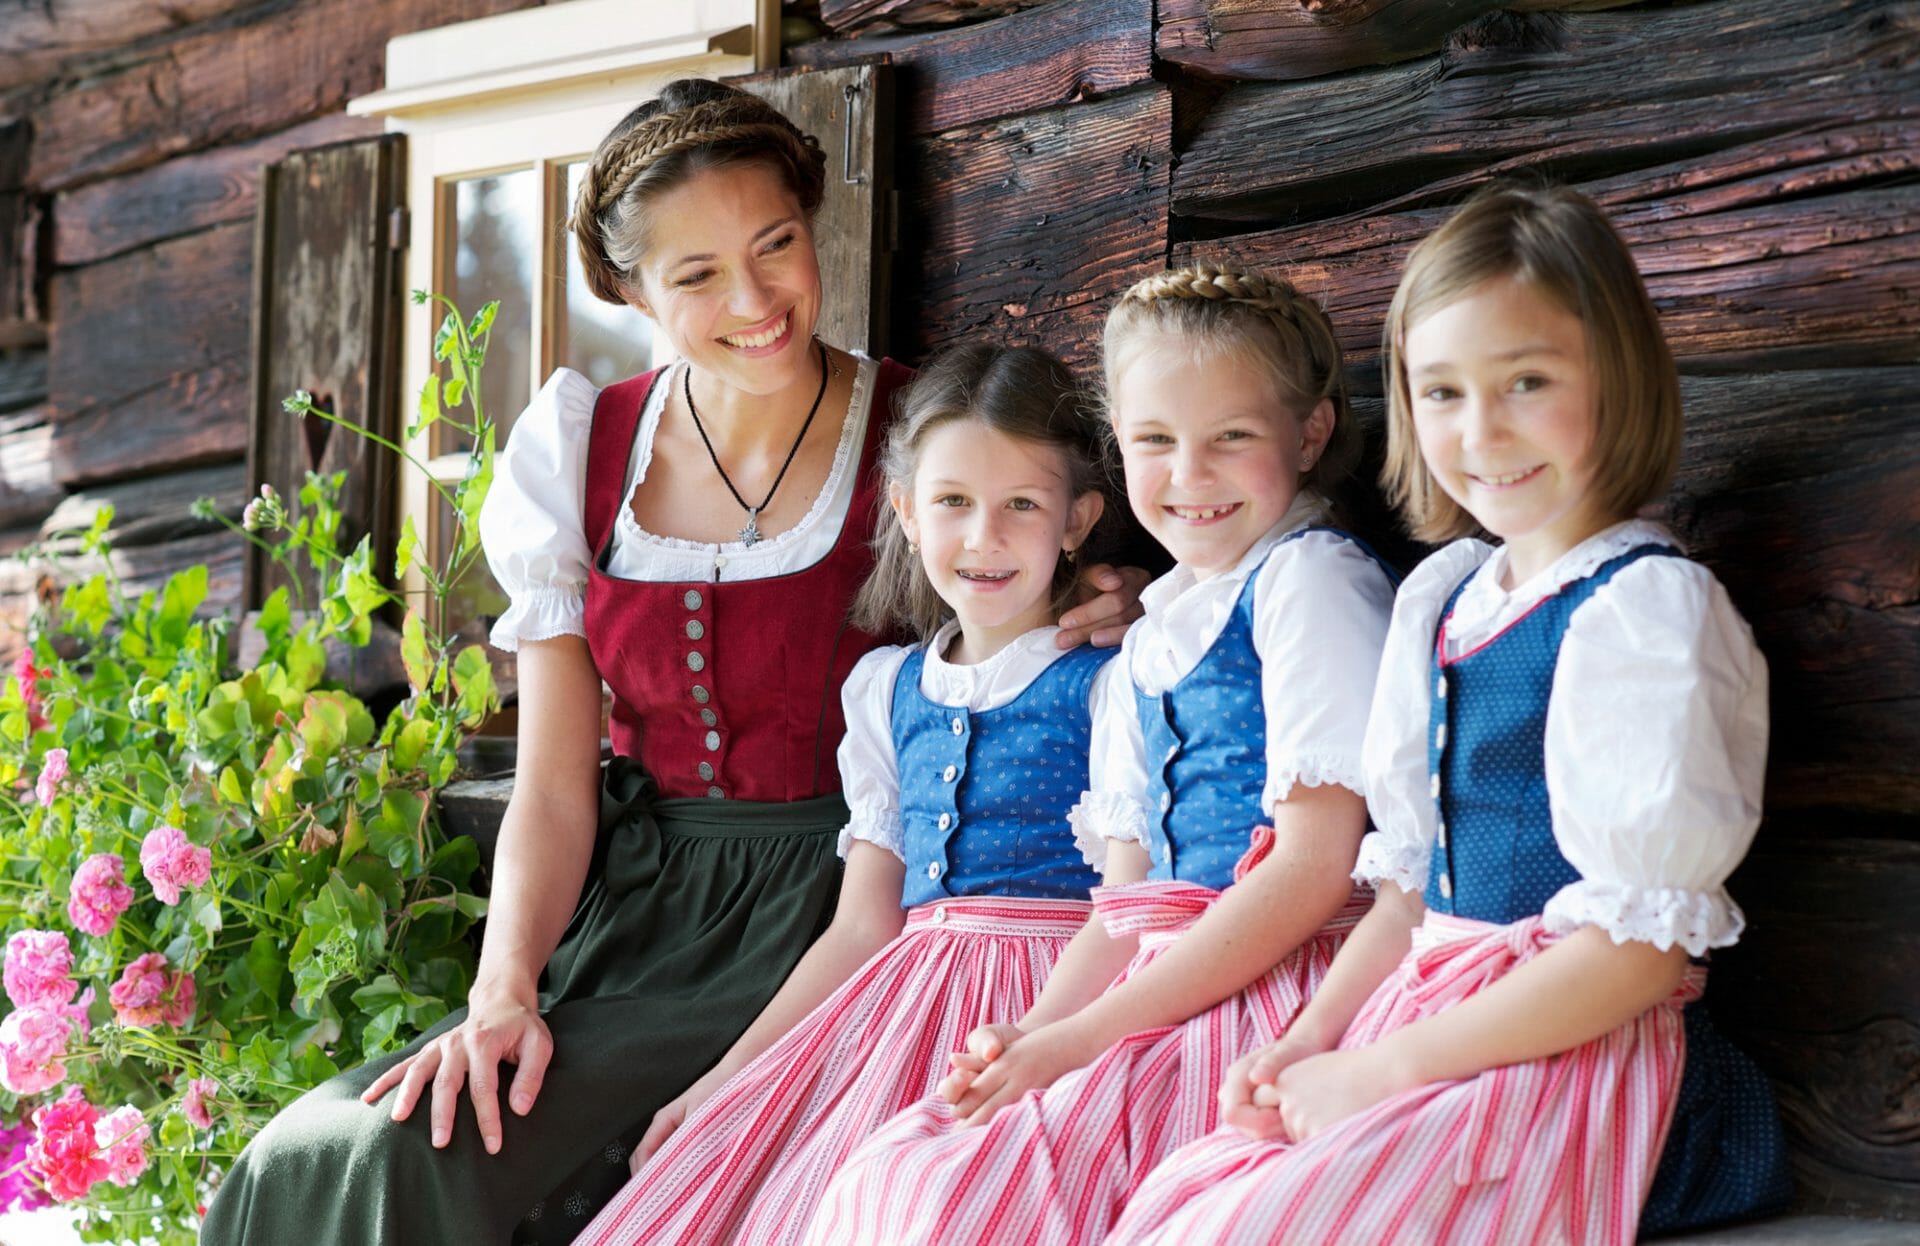 Какой народ в германии. Дирндль национальный костюм Германии. Национальный костюм Австрии национальный костюм Австрии. Австрийский дирндль. Дирндль платье австрийское.